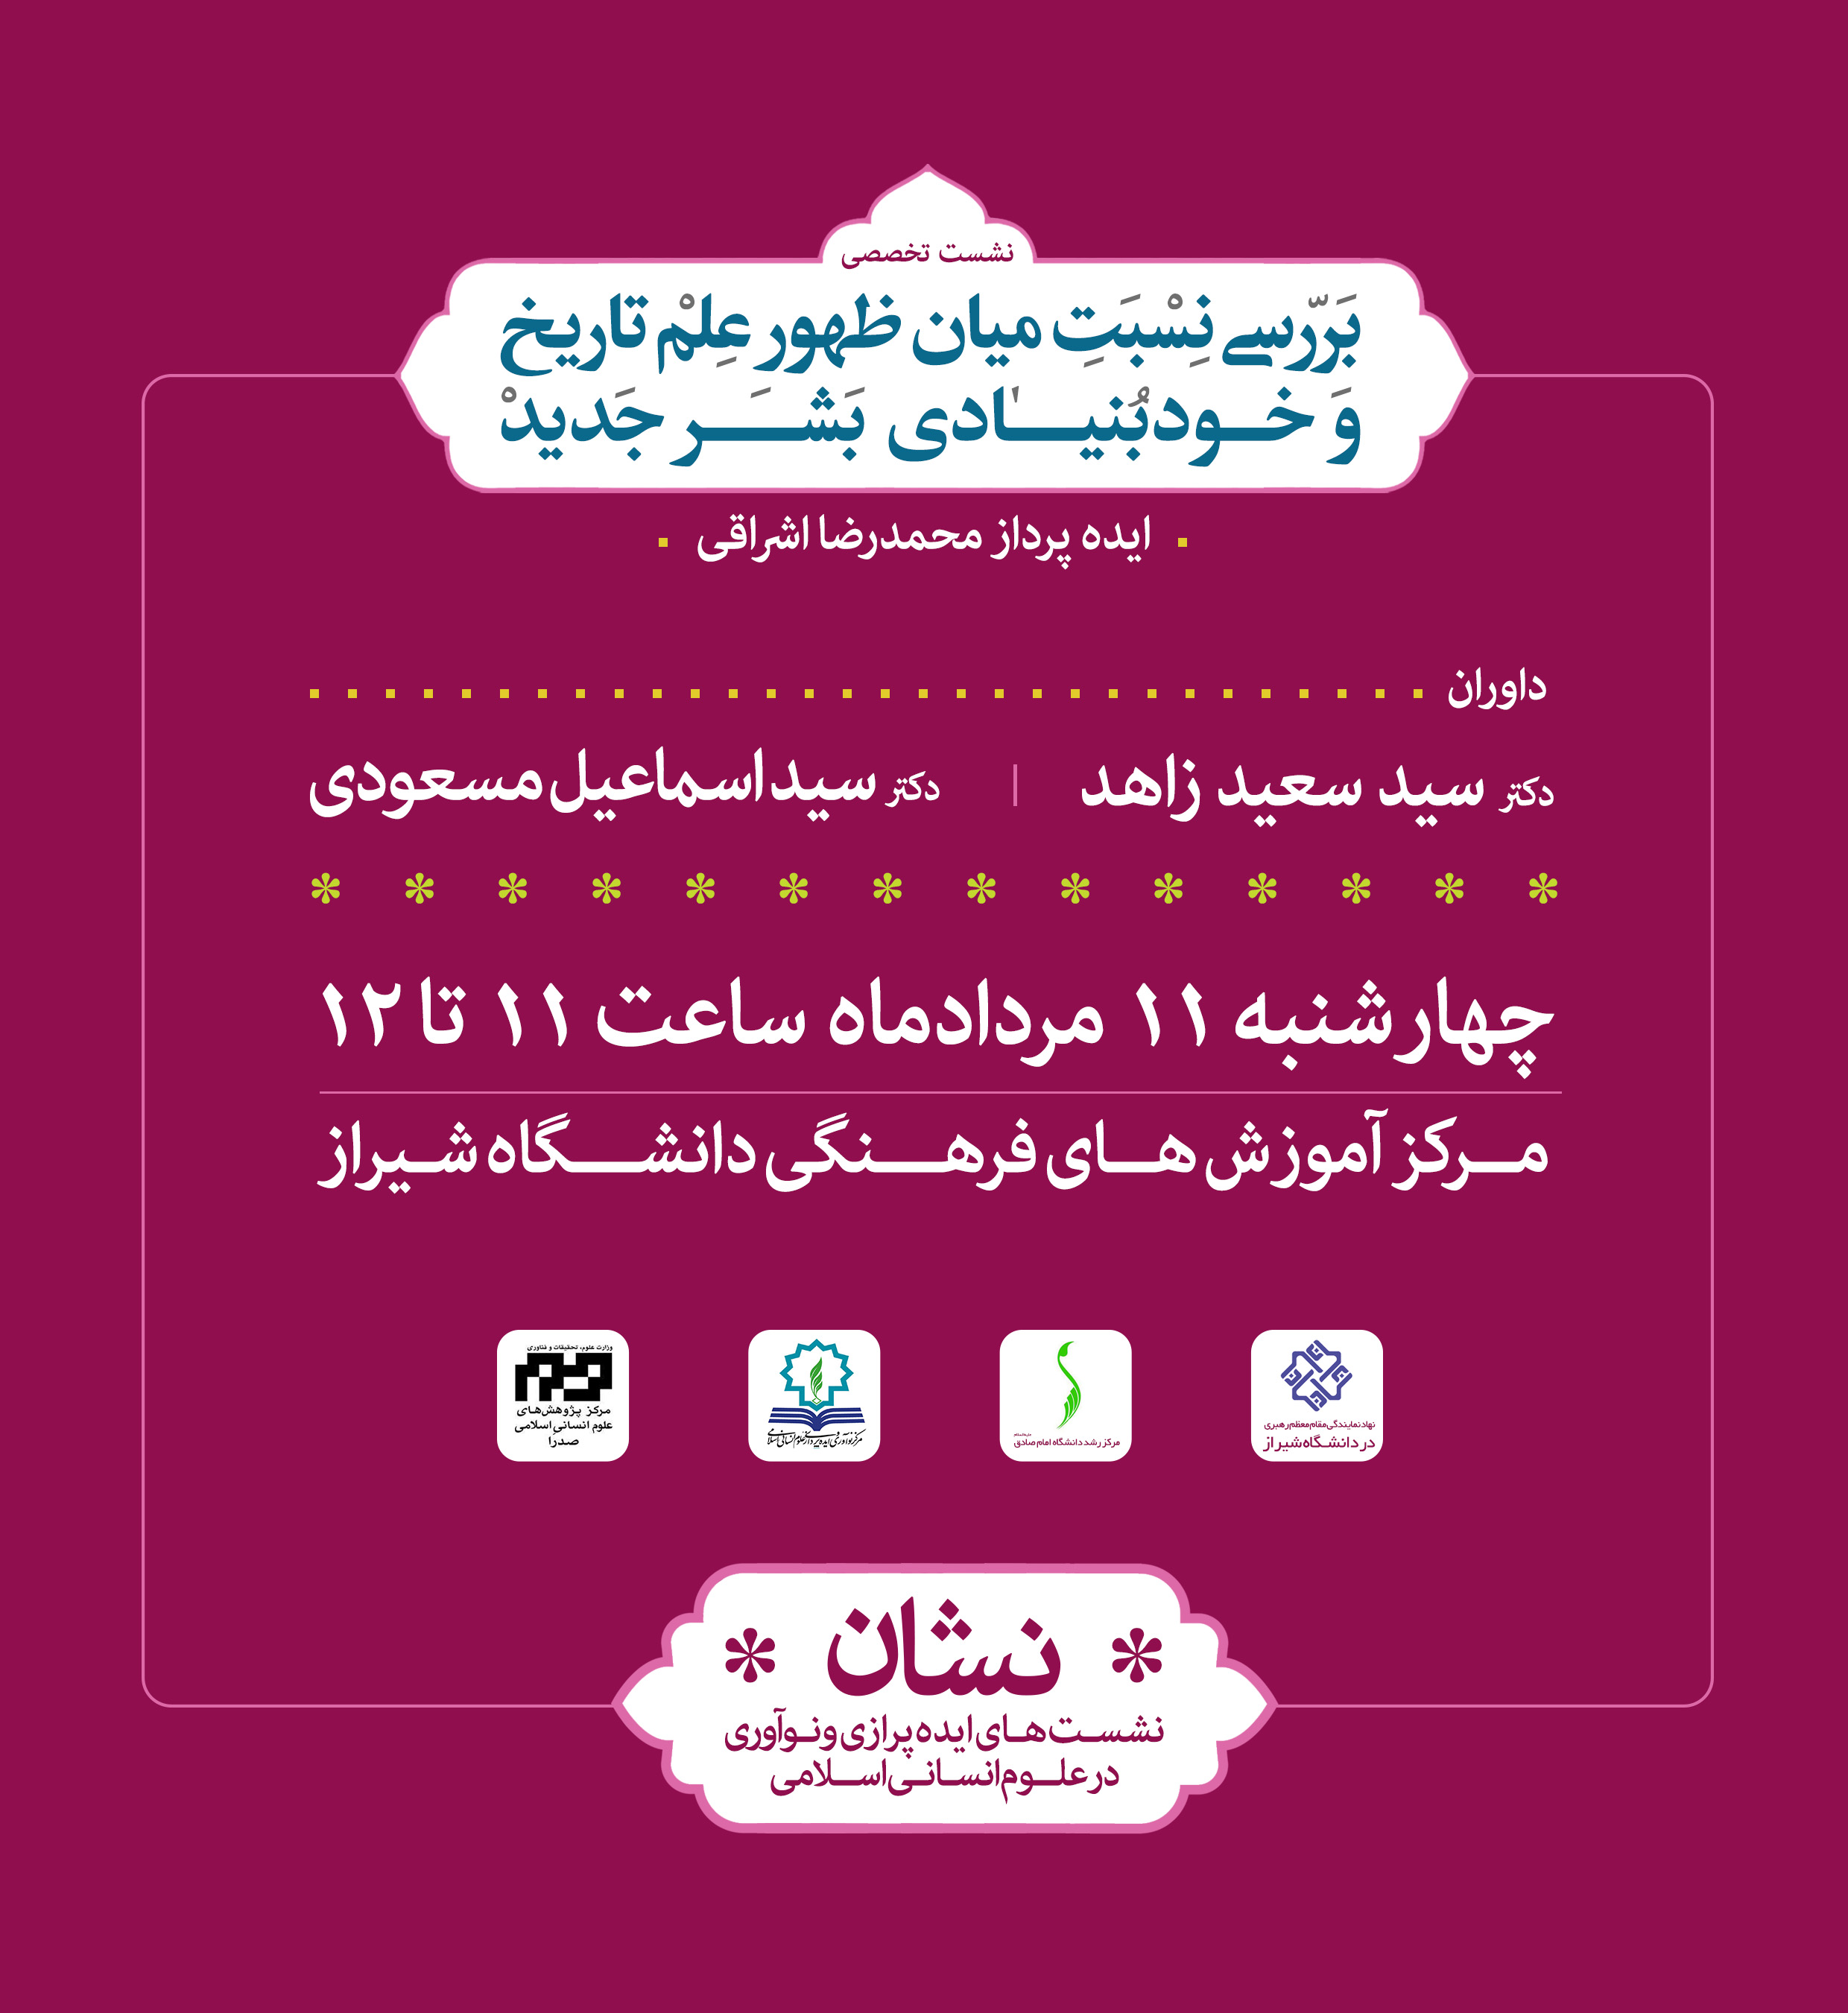 نوزدهمین نشست علمی با ارائه آقای اشراقی مورخ ۱۱/ ۵/ ۹۶ در دانشگاه شیراز برگزار می شود